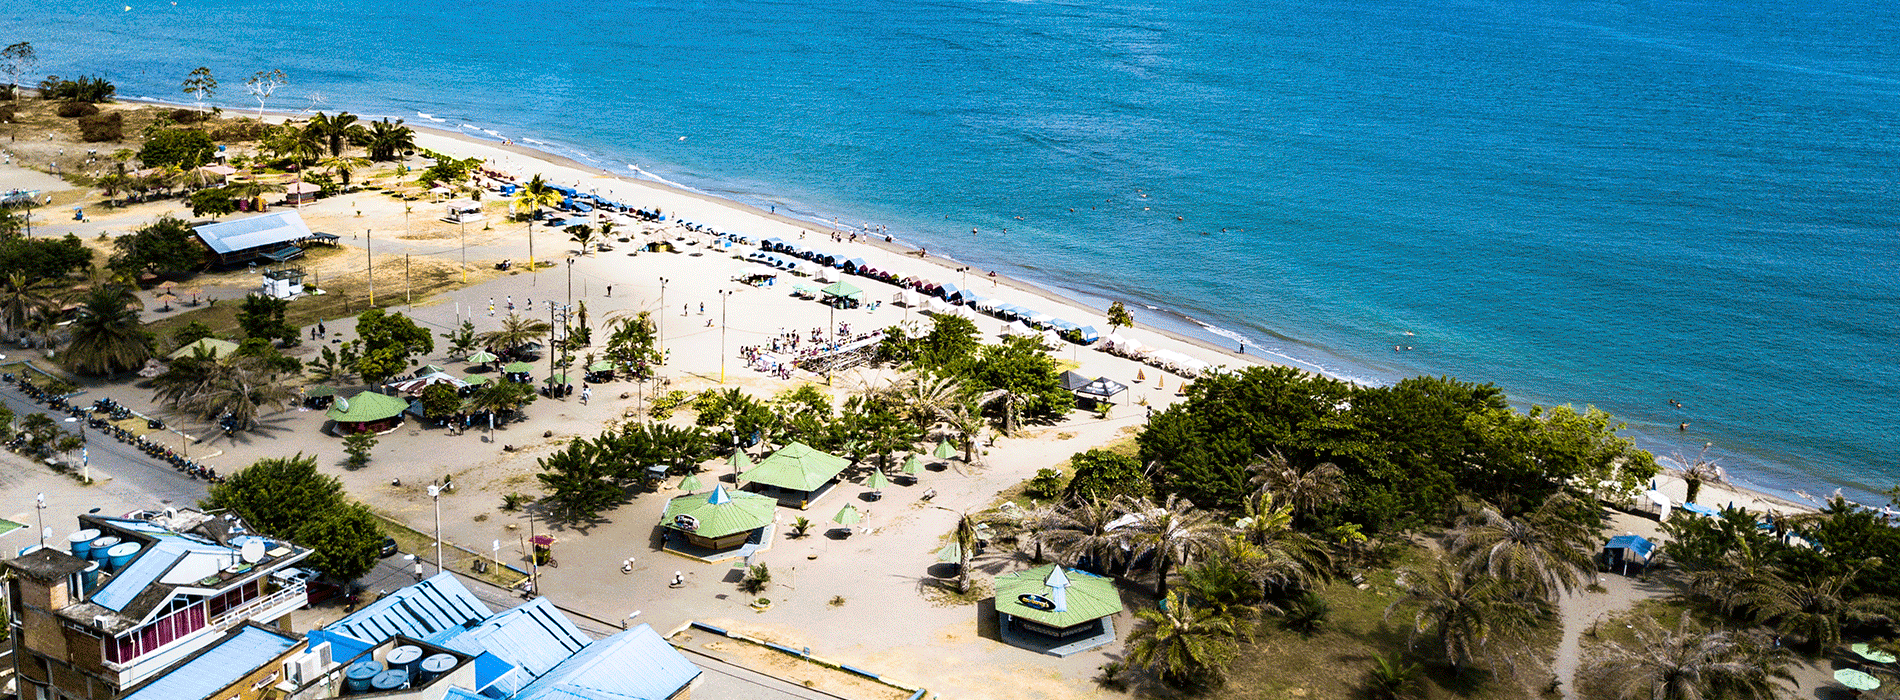 Fotografía panorámica de playa Colombiana 